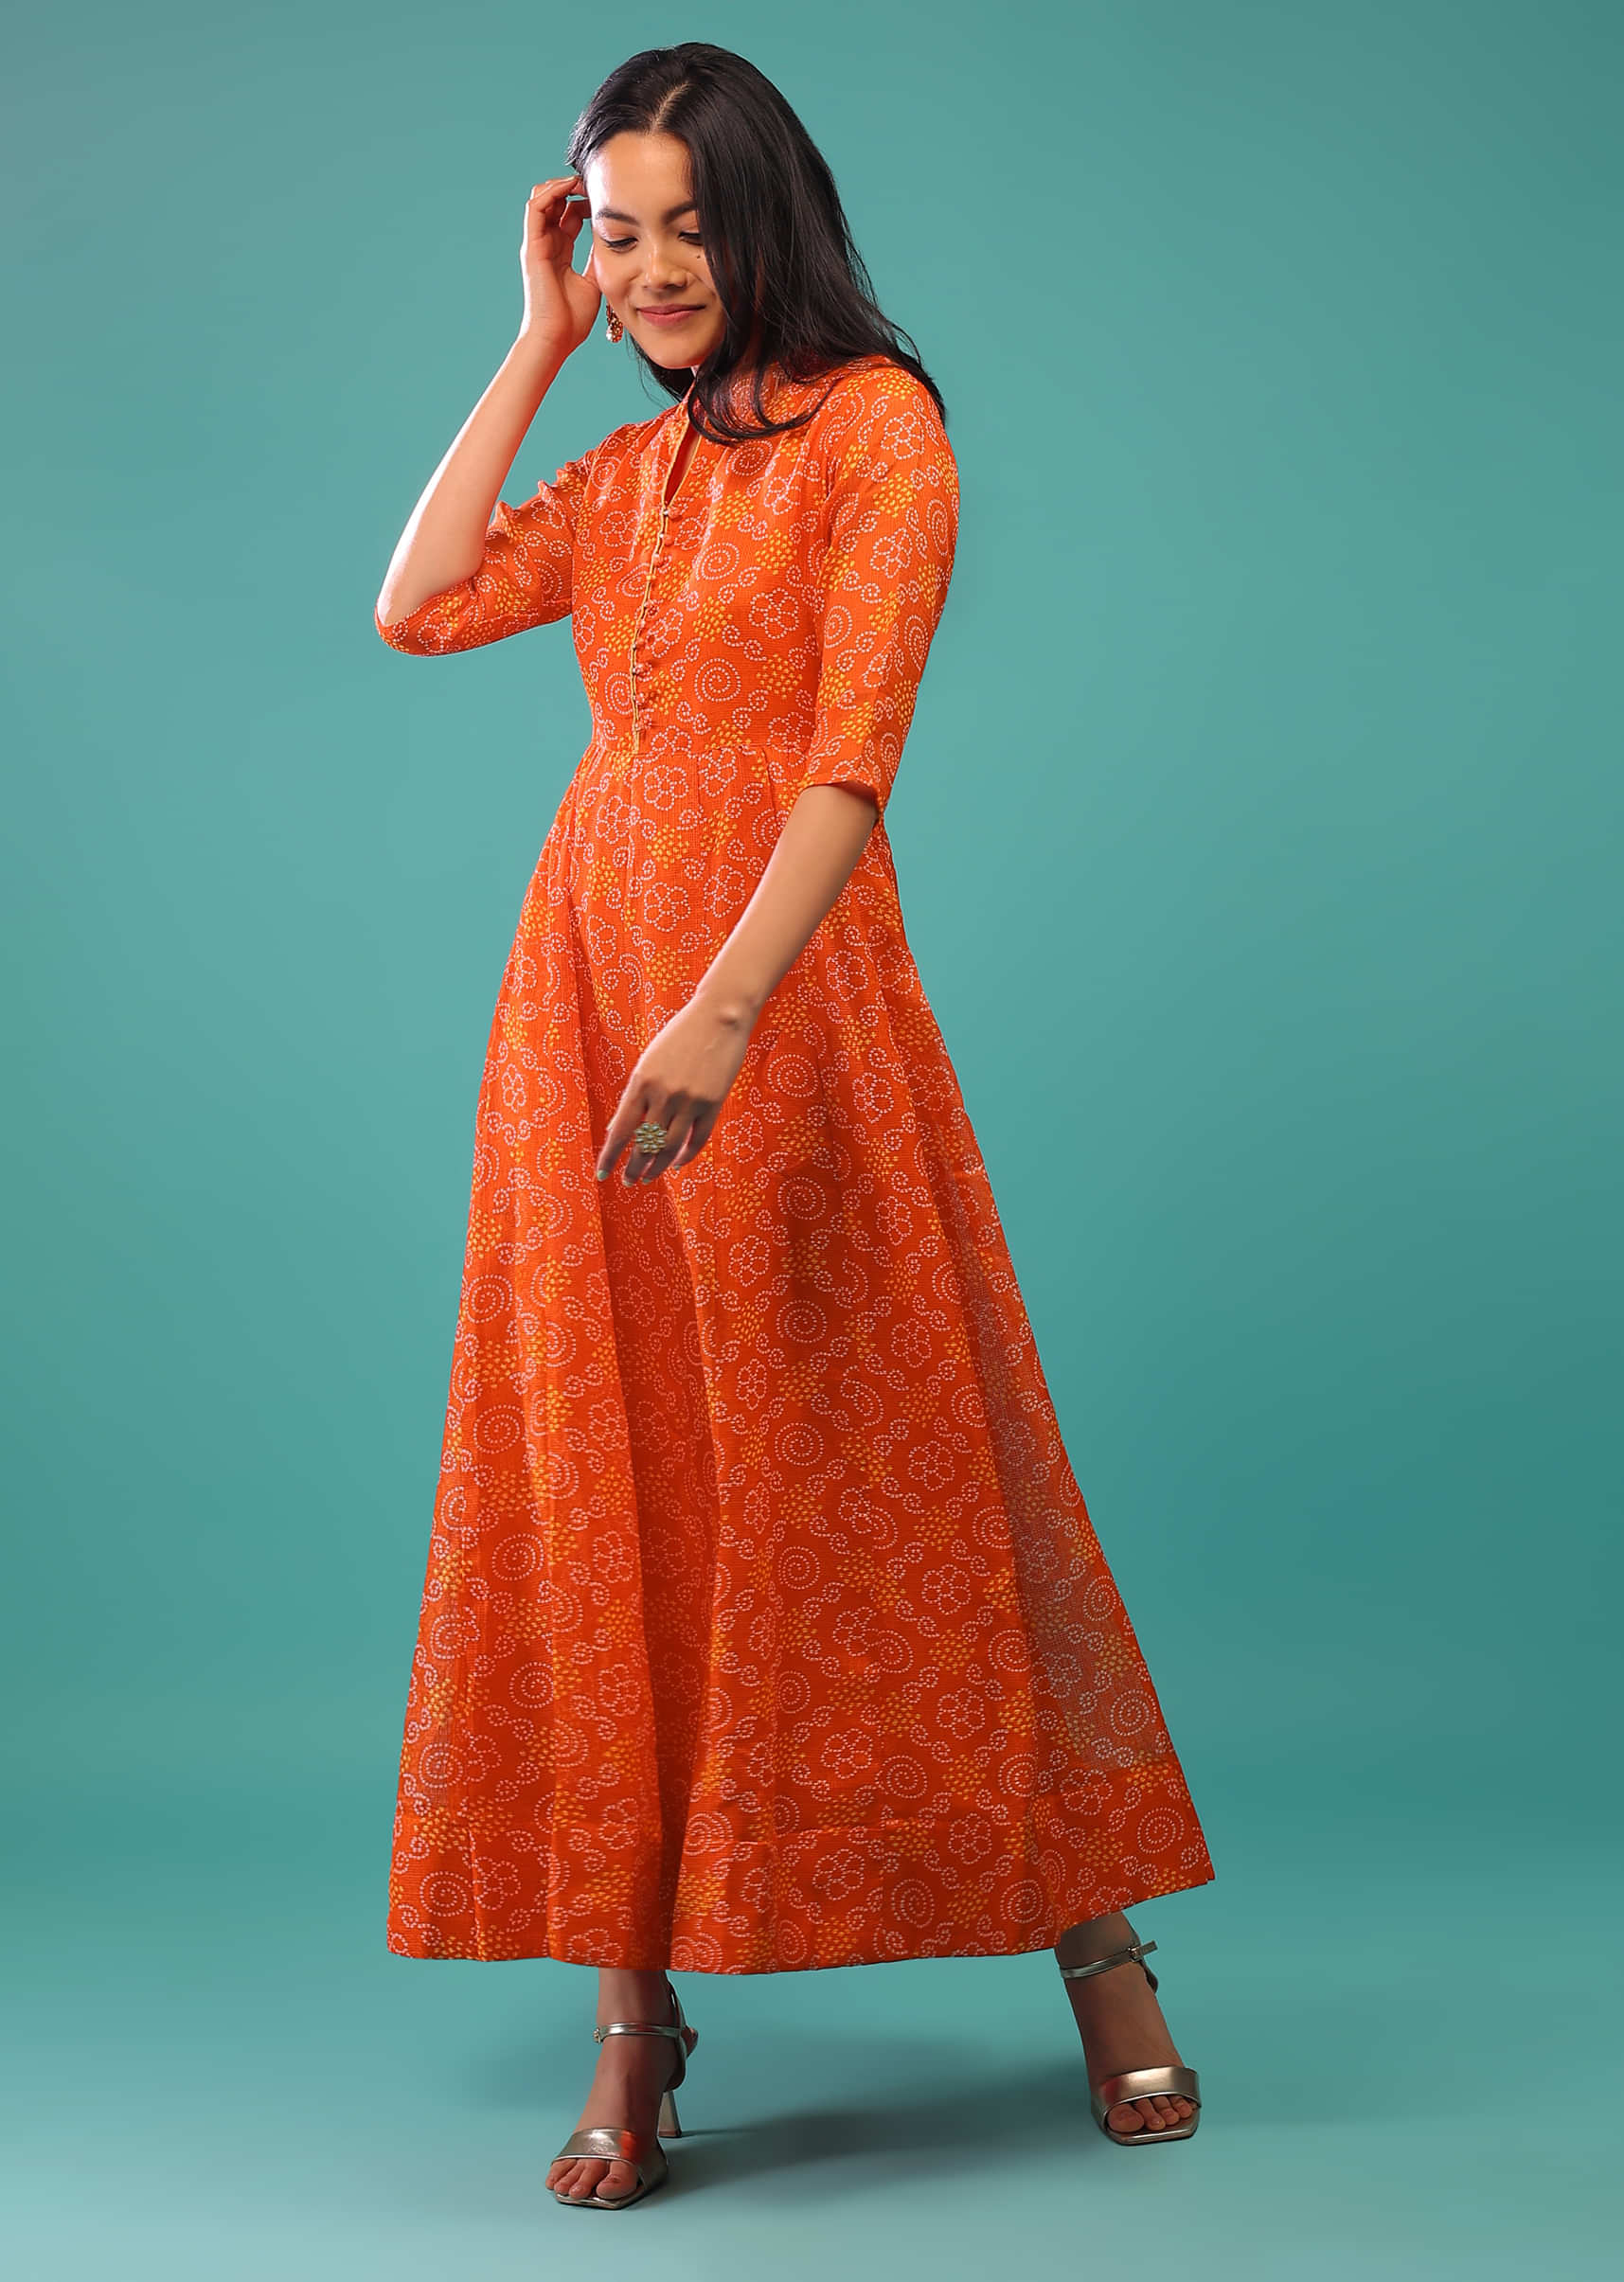 Red Orange Dress With Bandhani Print Made With Kota Silk